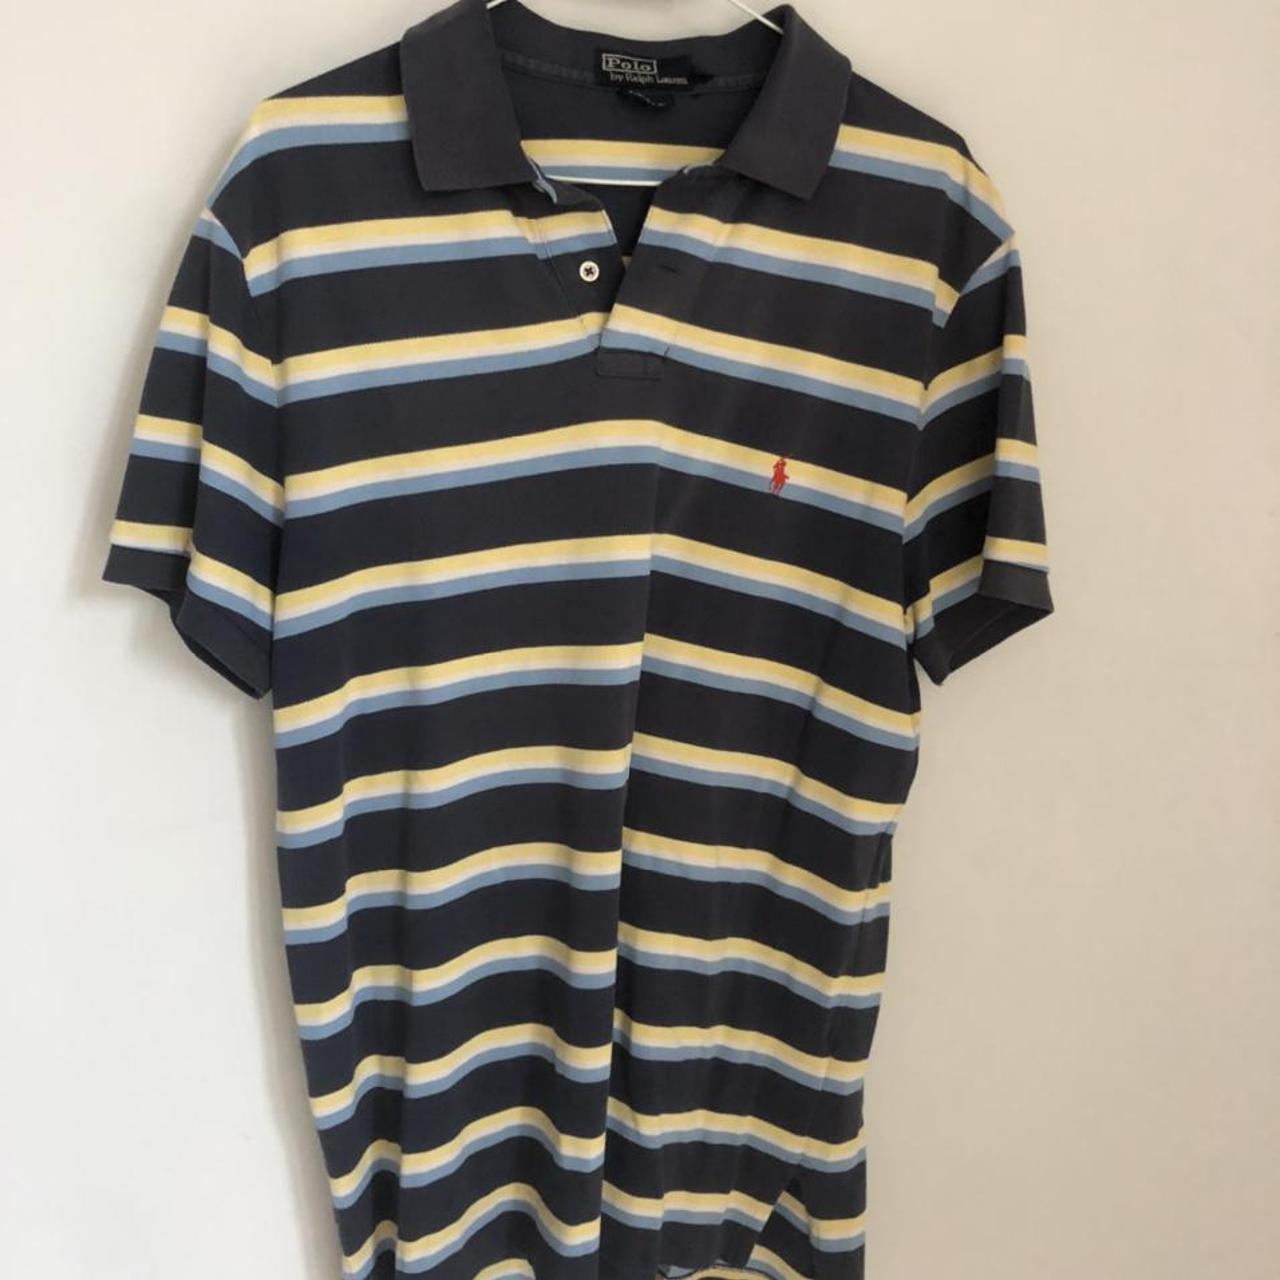 classic Ralph Lauren polo shirt • good condition: ... - Depop